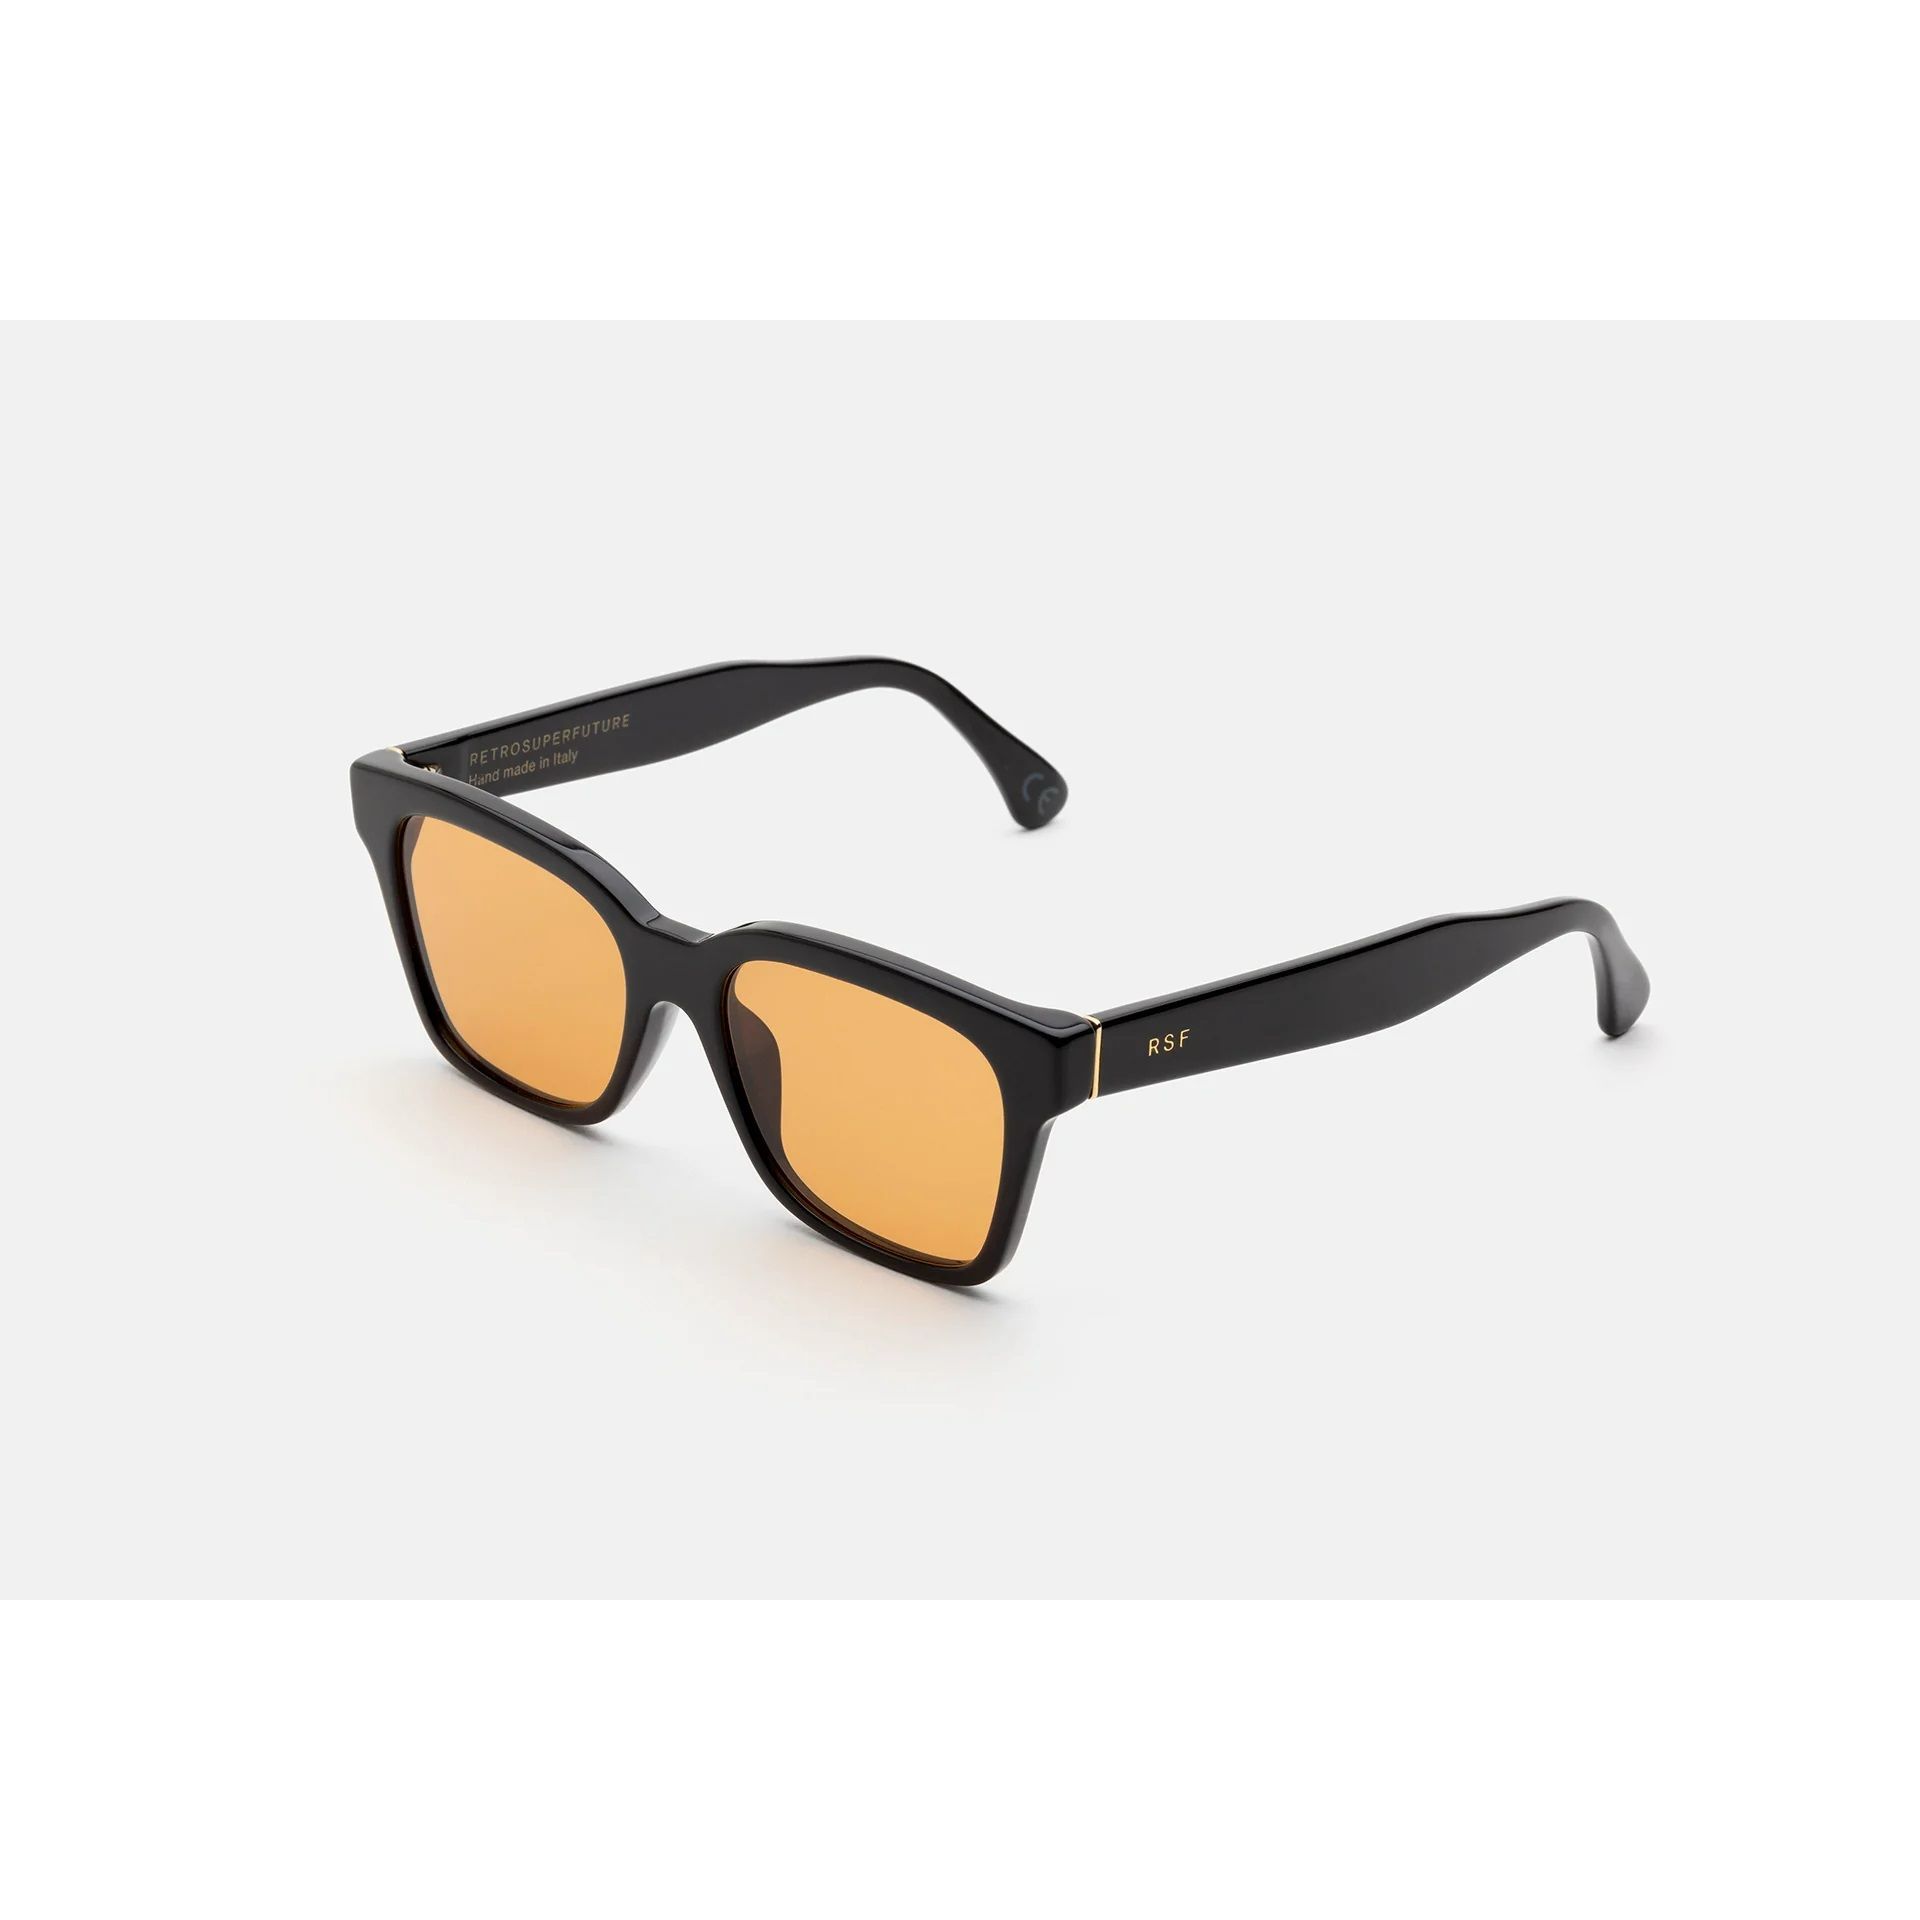 AMERICA REFINED Square Sunglasses 9I2 - size 52